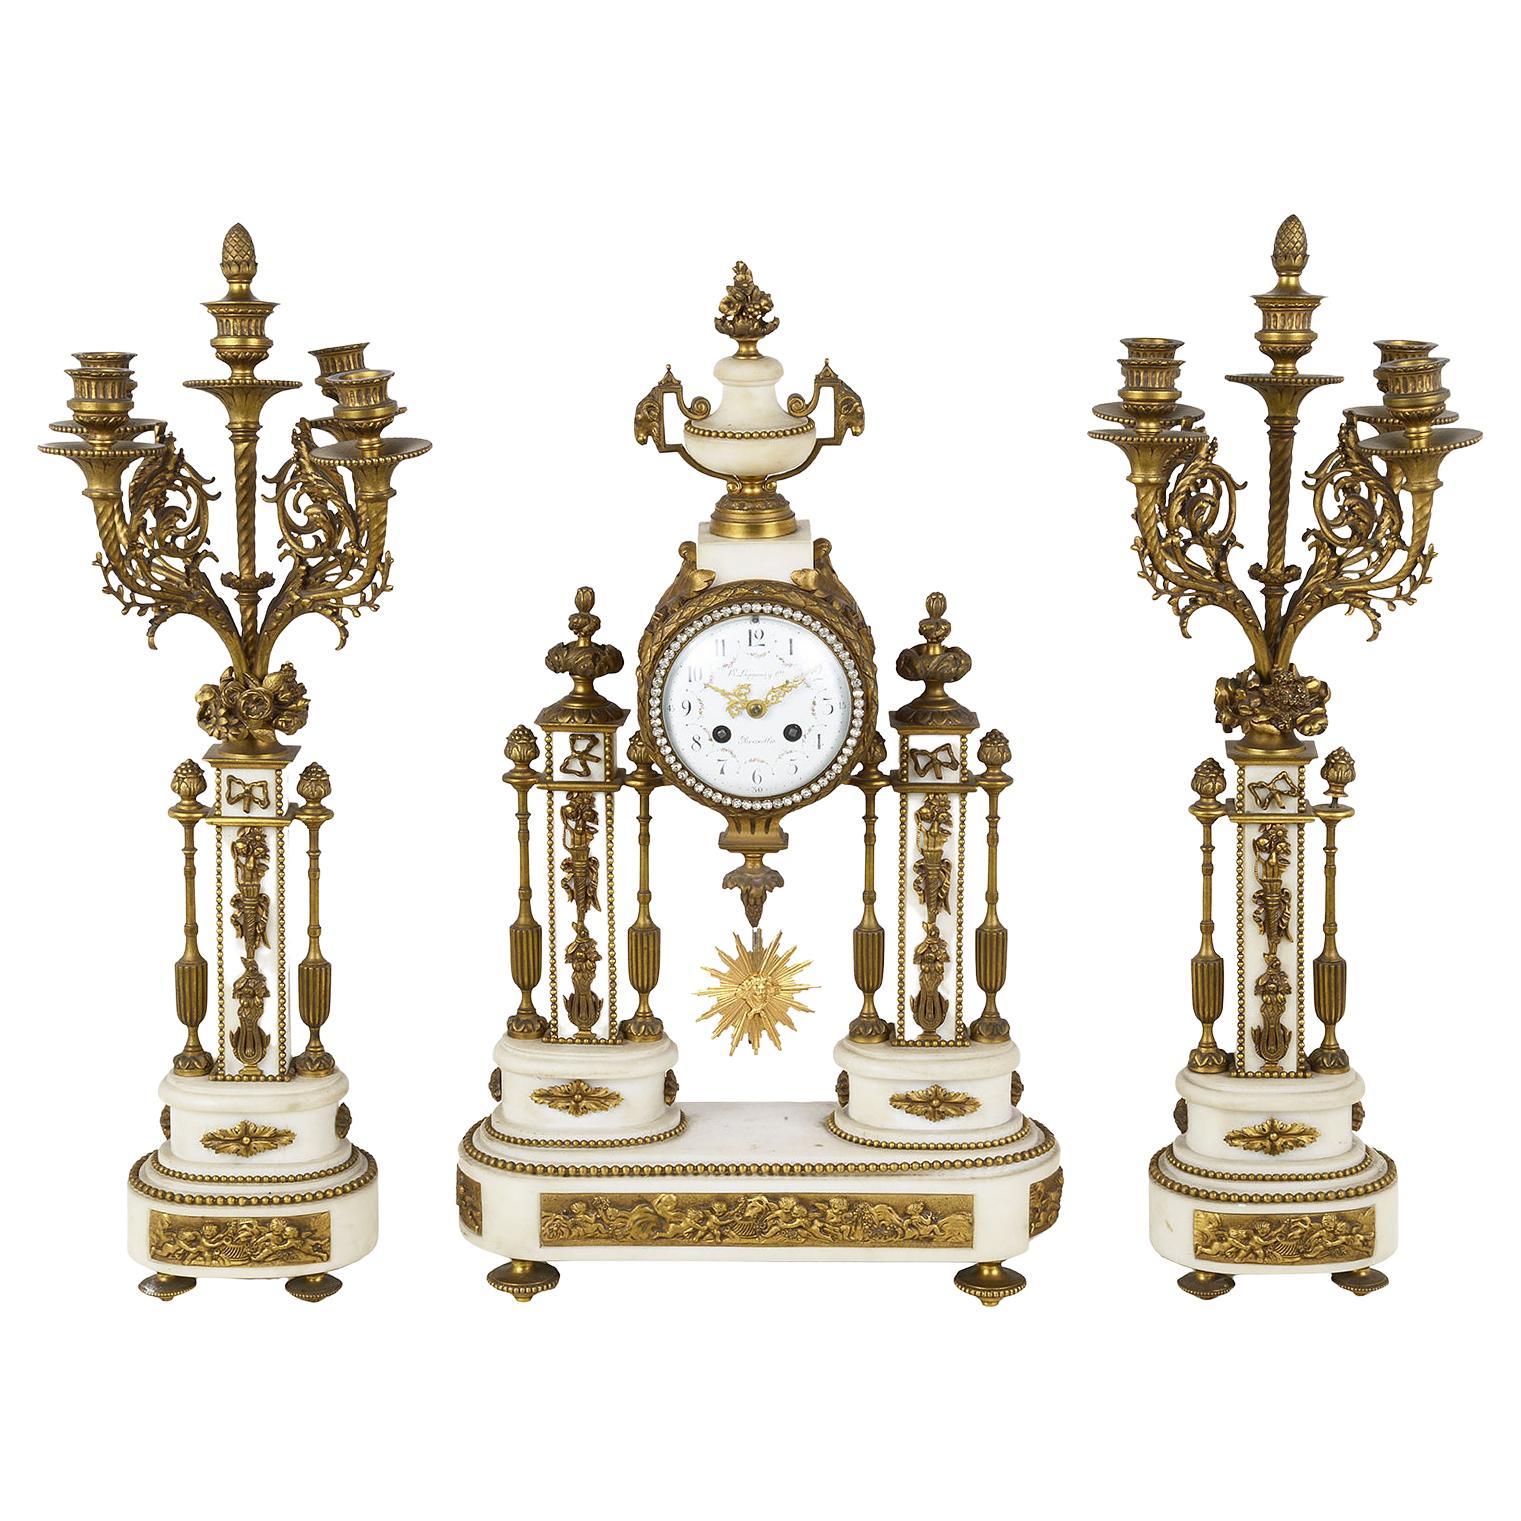 Garniture d'horloge de style Louis XVI du XIXe siècle français